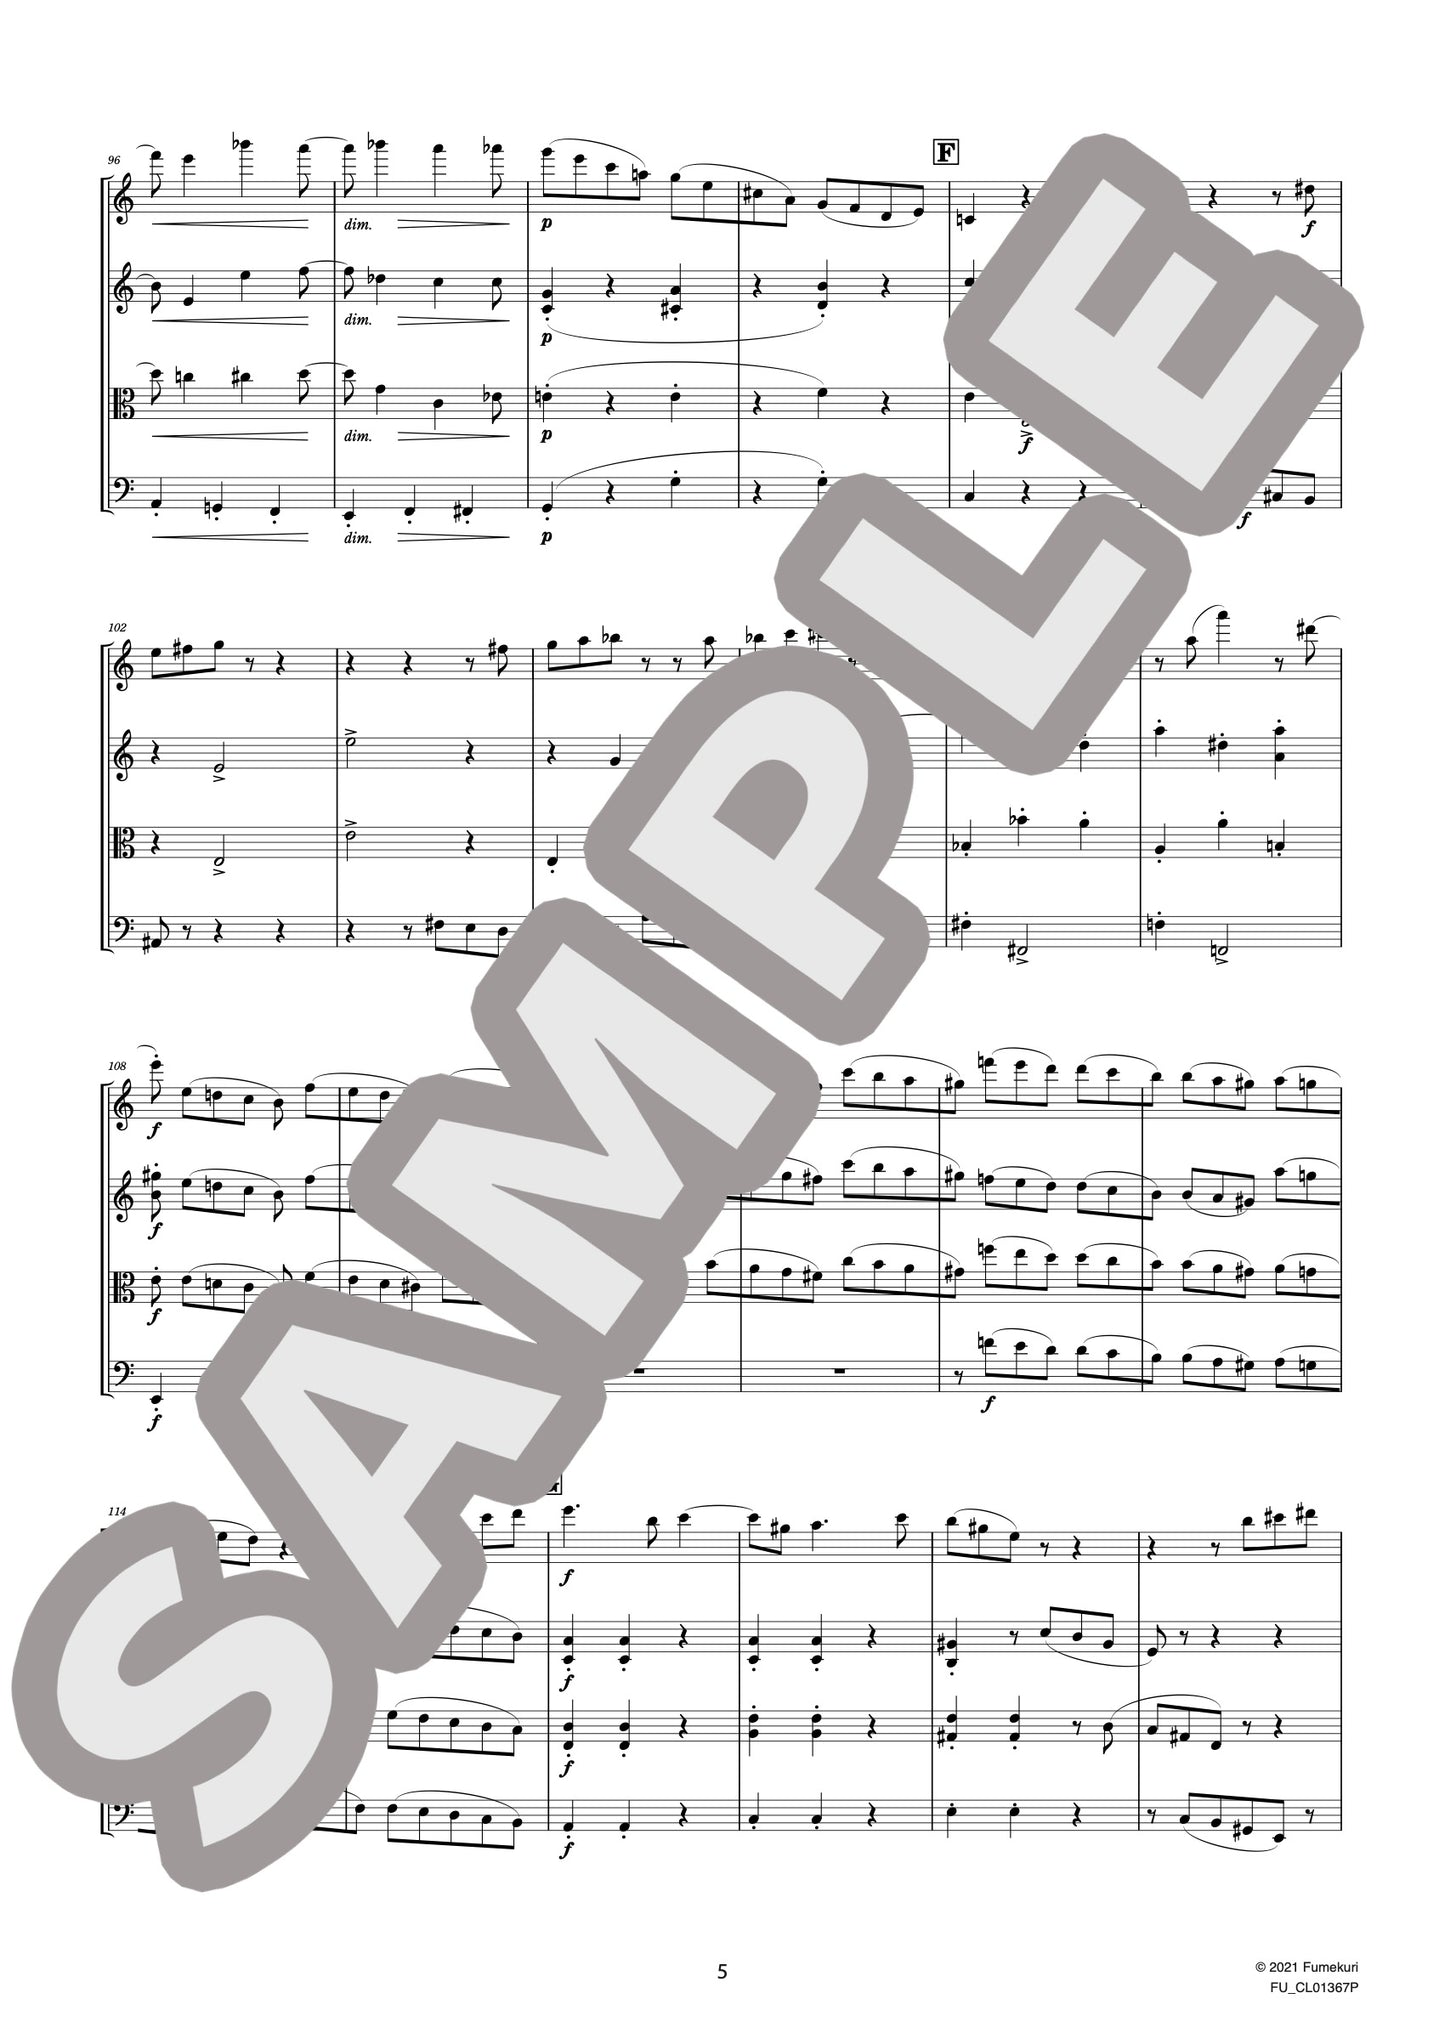 2本のヴァイオリンとヴィオラ、チェロのための弦楽四重奏曲 第2番 イ短調 作品51-2 第4楽章（BRAHMS) / クラシック・オリジナル楽曲【中上級】